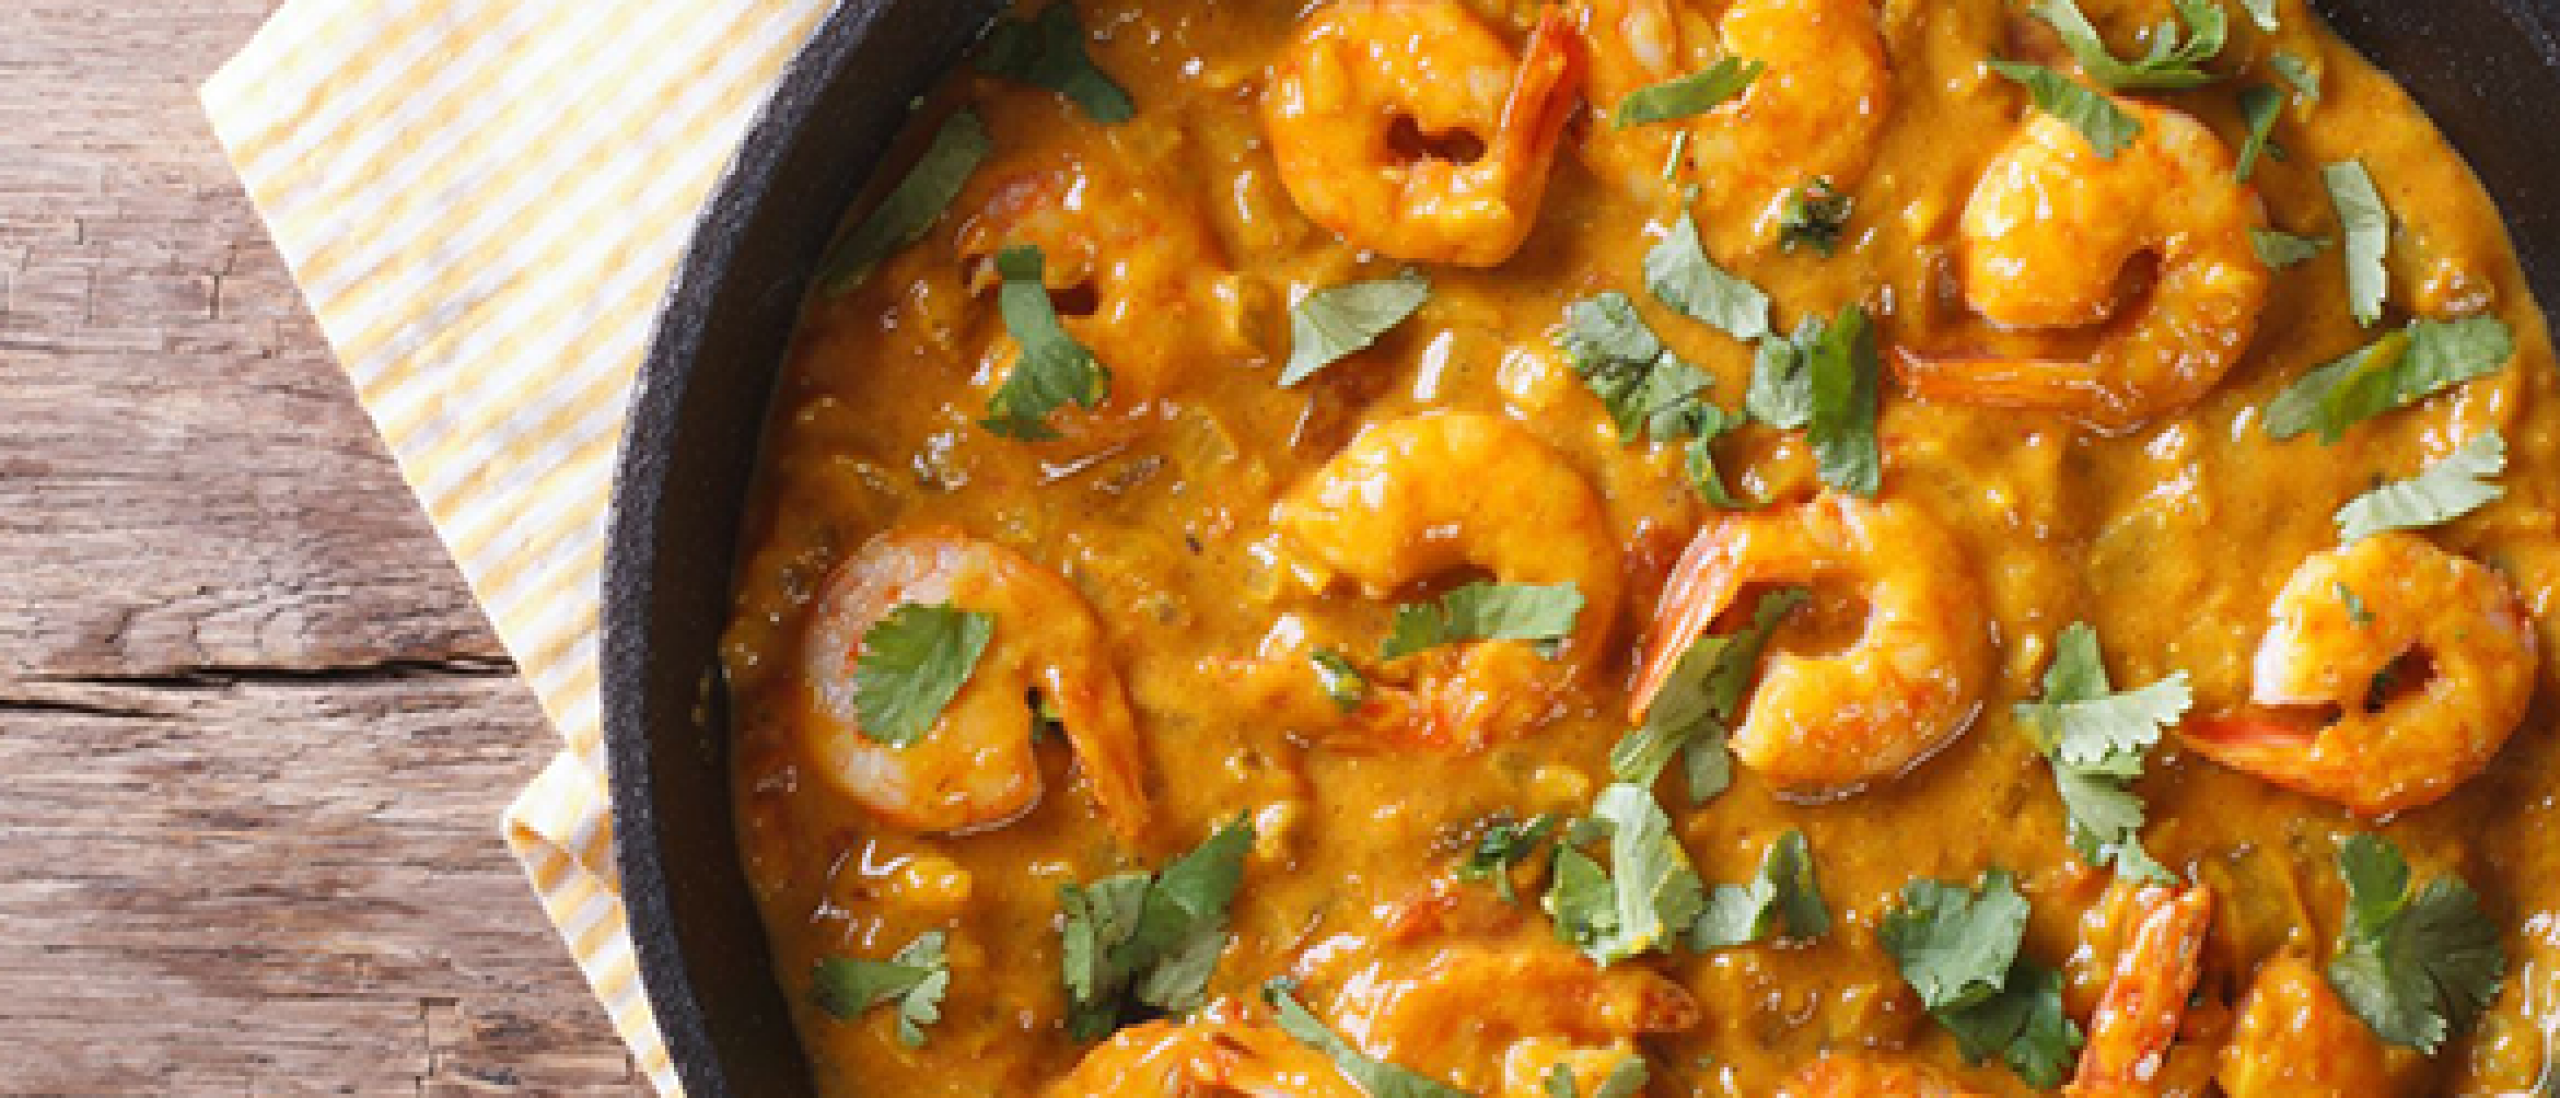 Recept voor rode curry met garnalen